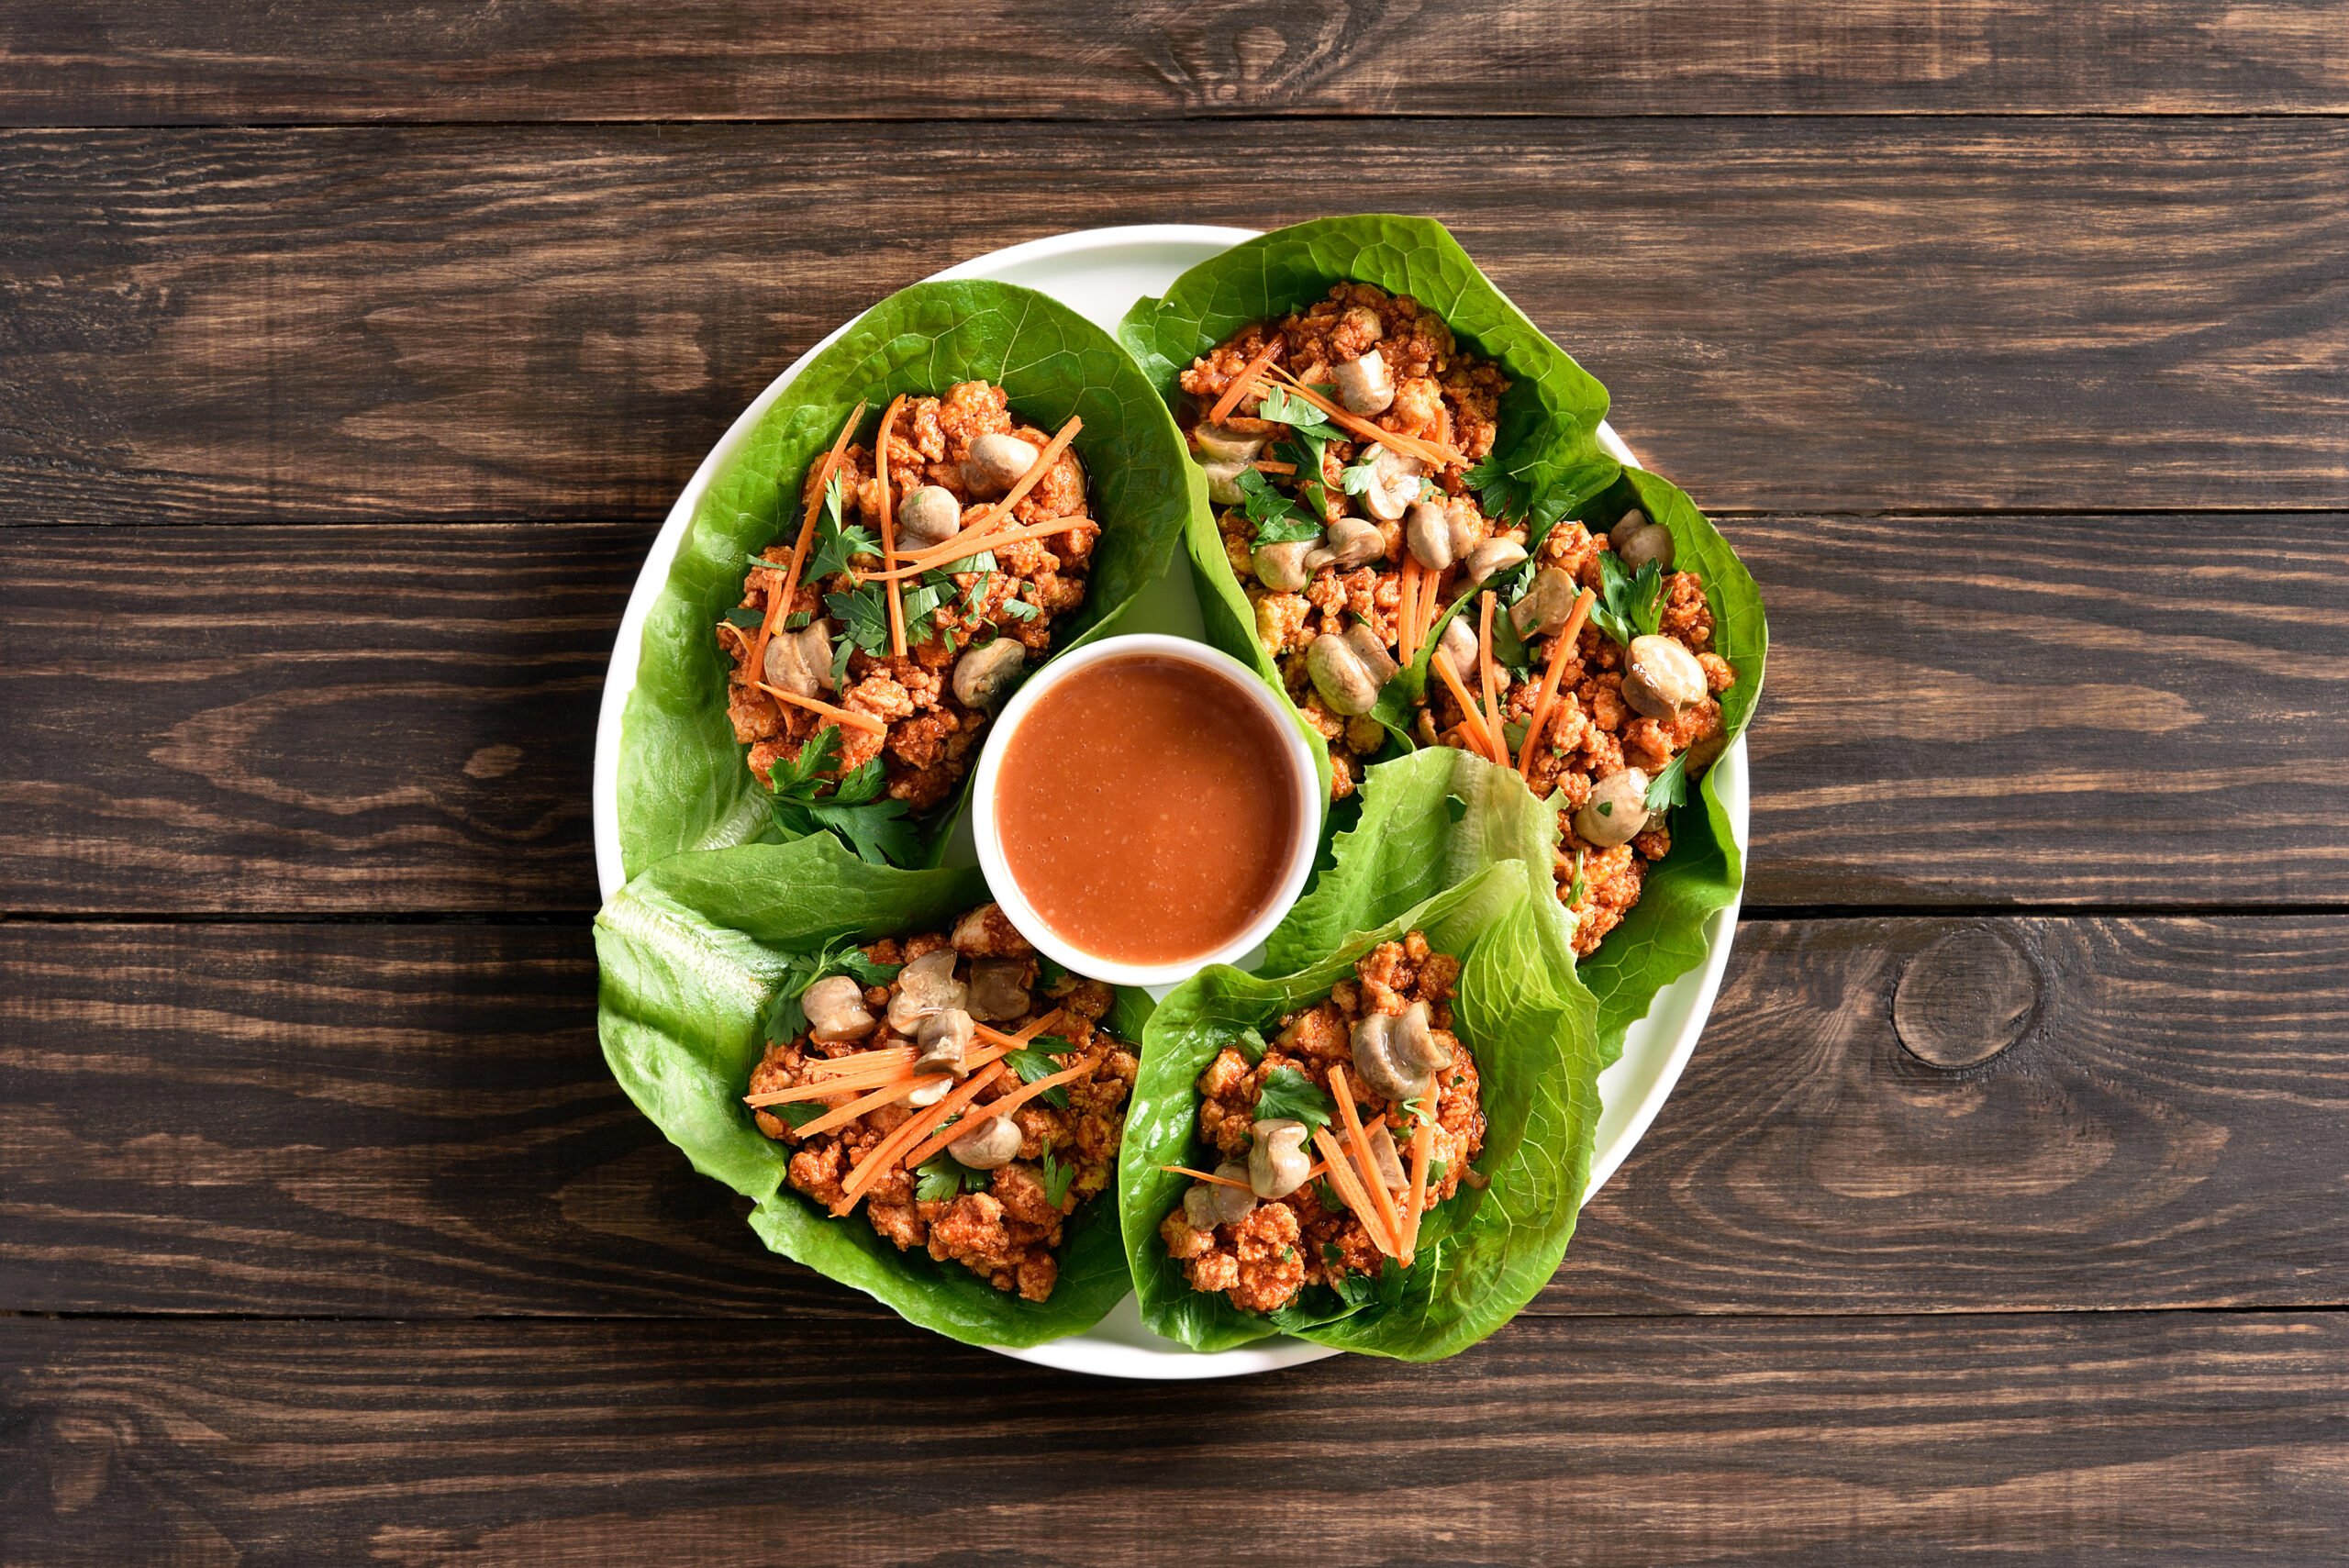 Thai-inspired Lettuce wraps